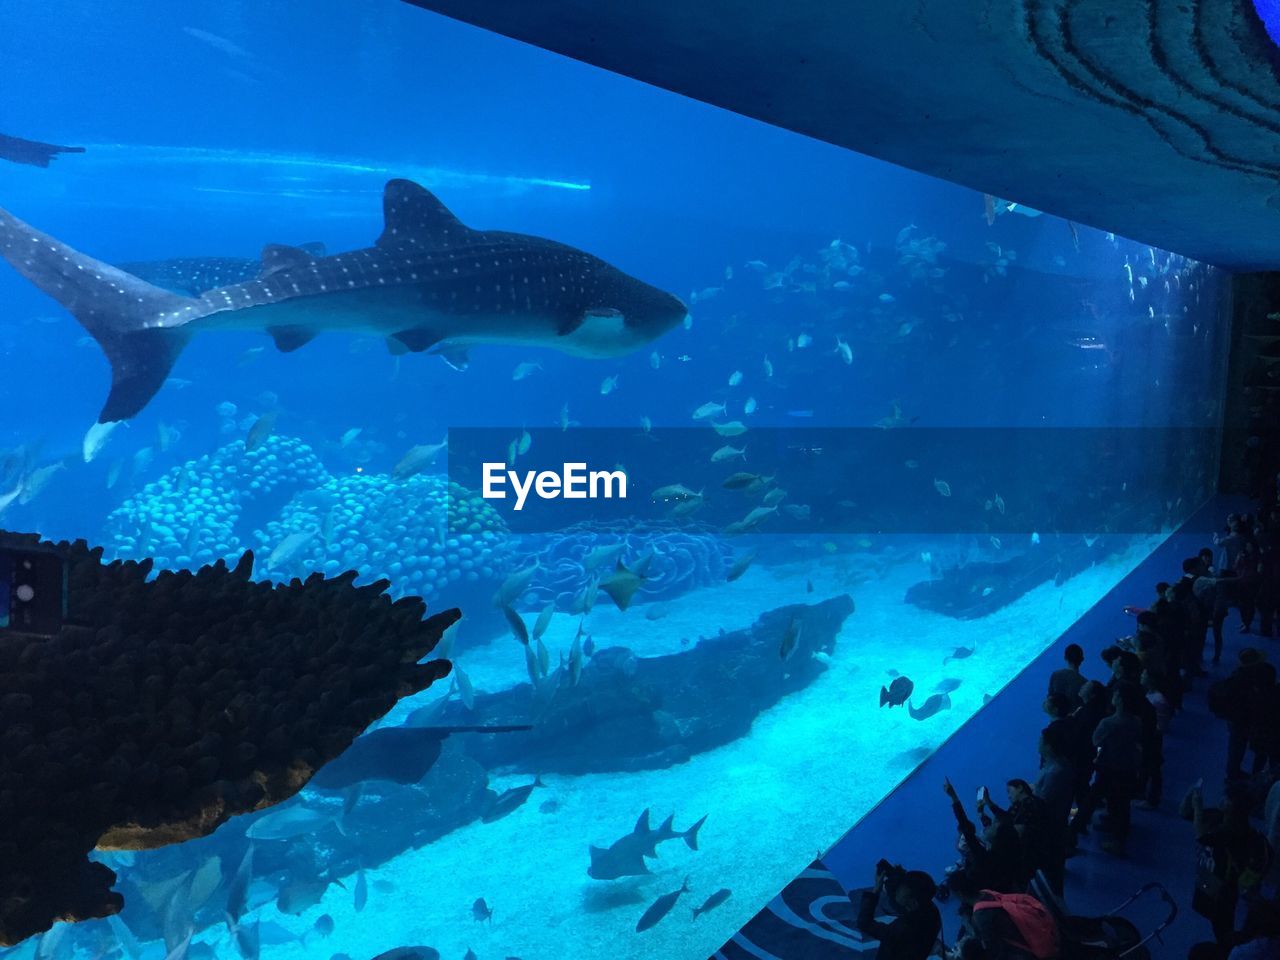 People watching whale shark in aquarium